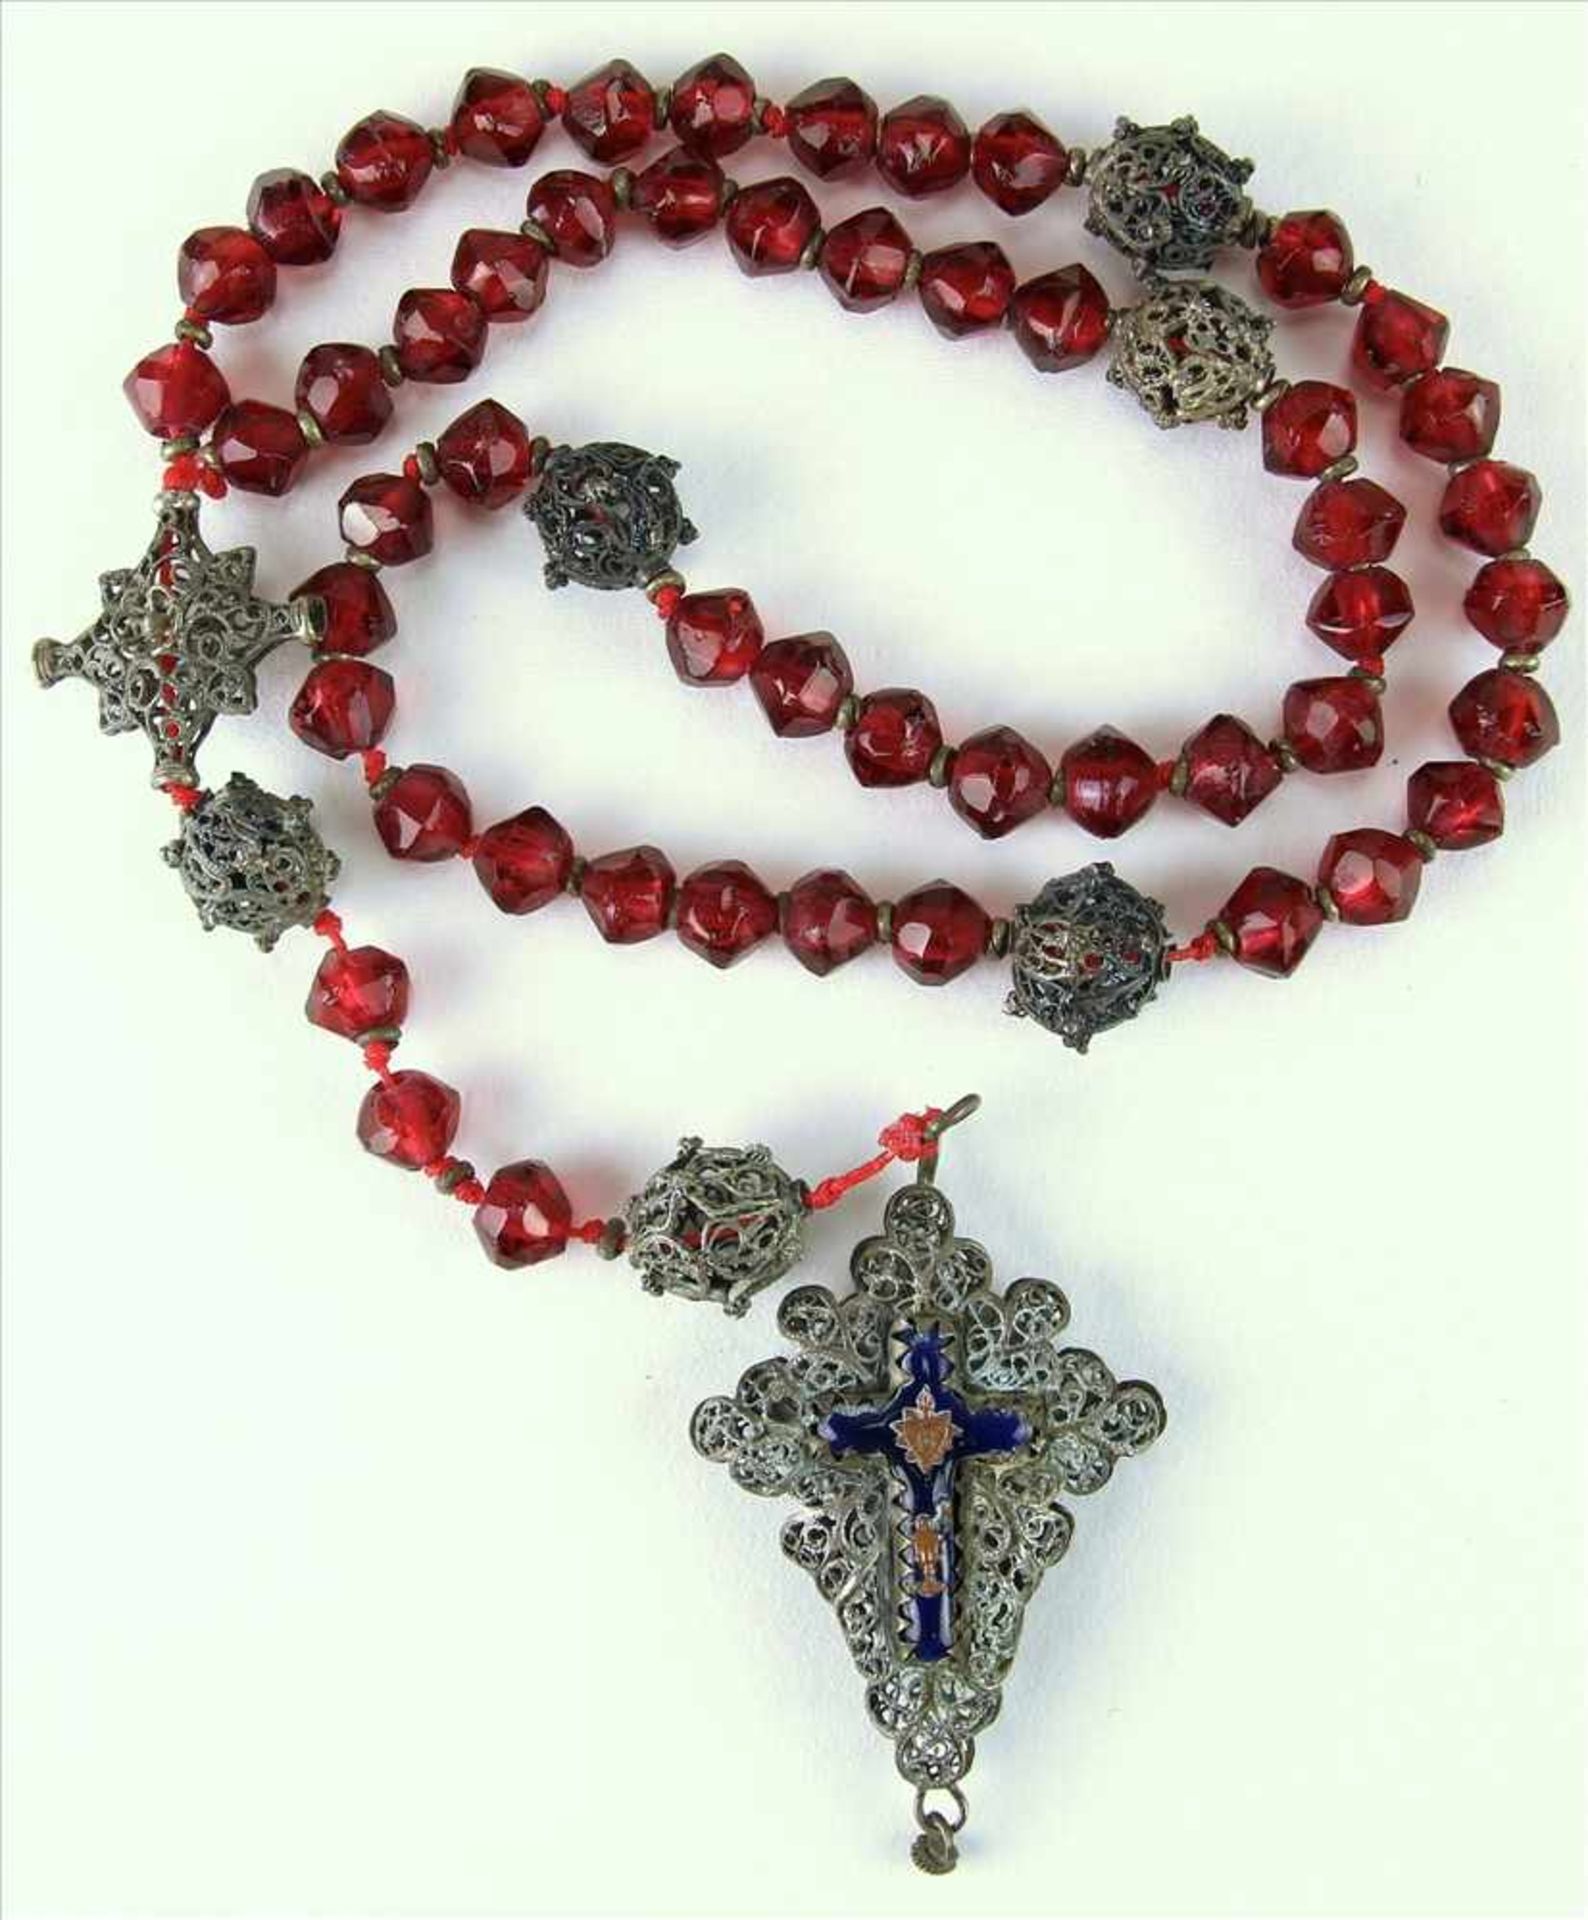 RosenkranzSüddeutsch 19. Jh. Kette mit roten (Glas)steinen und Silberkugeln. Kreuz mit - Bild 2 aus 4